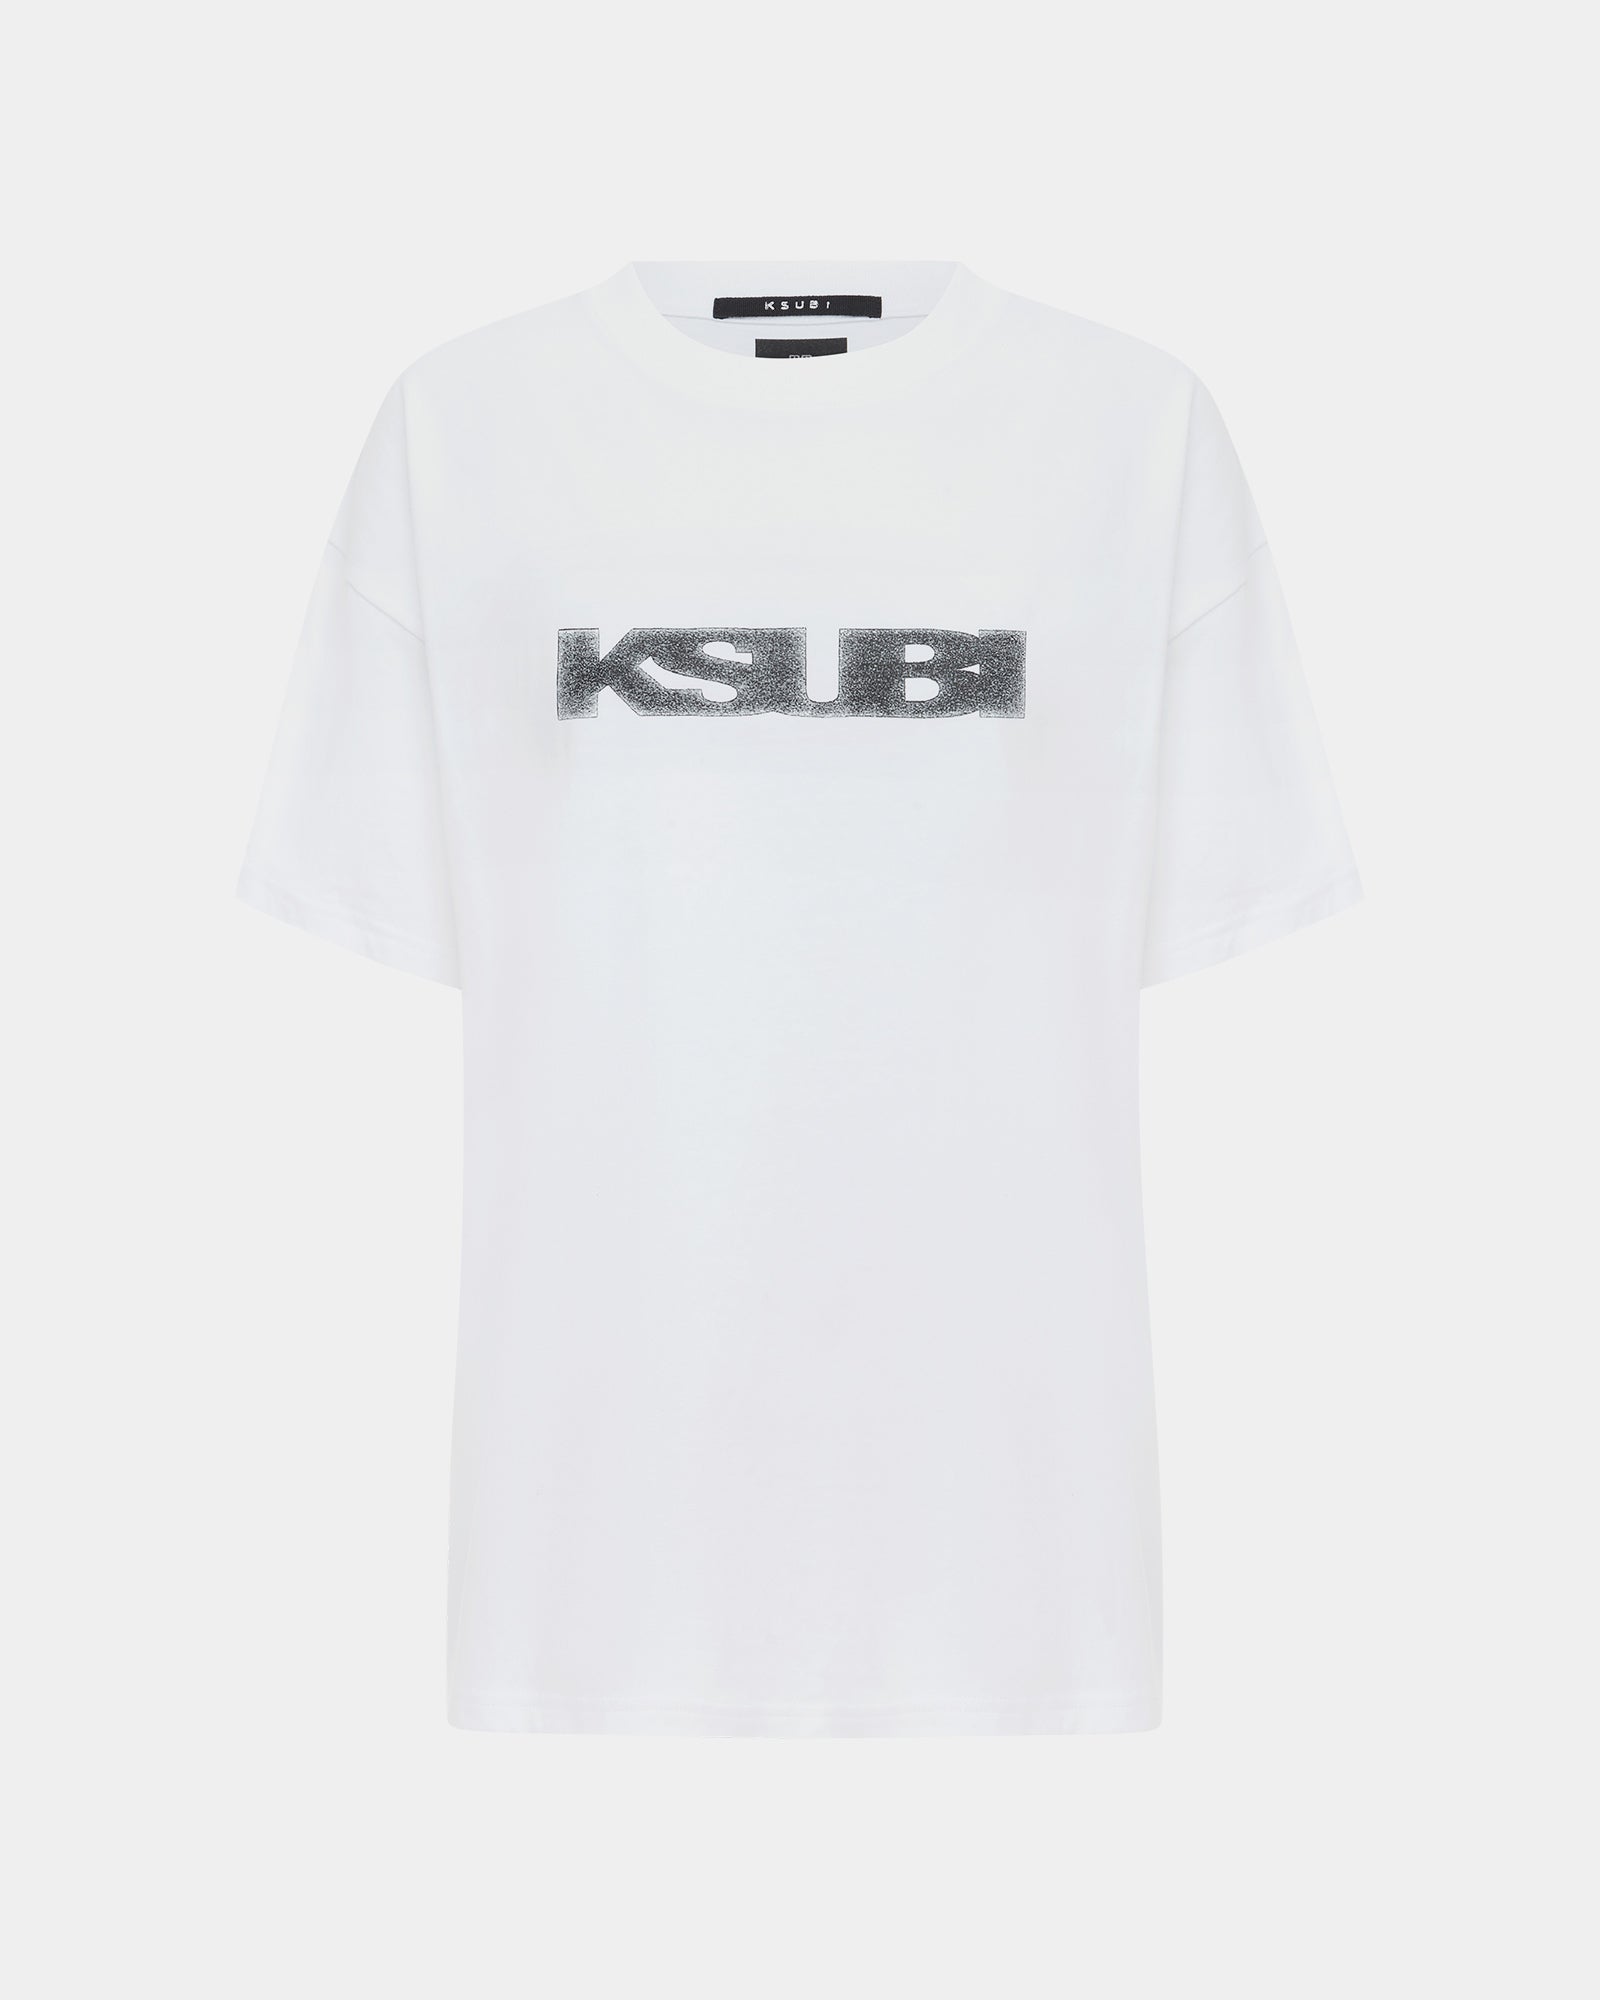 Sott Static Oh G ++ - Sleeve T-shirt Short | White Ksubi